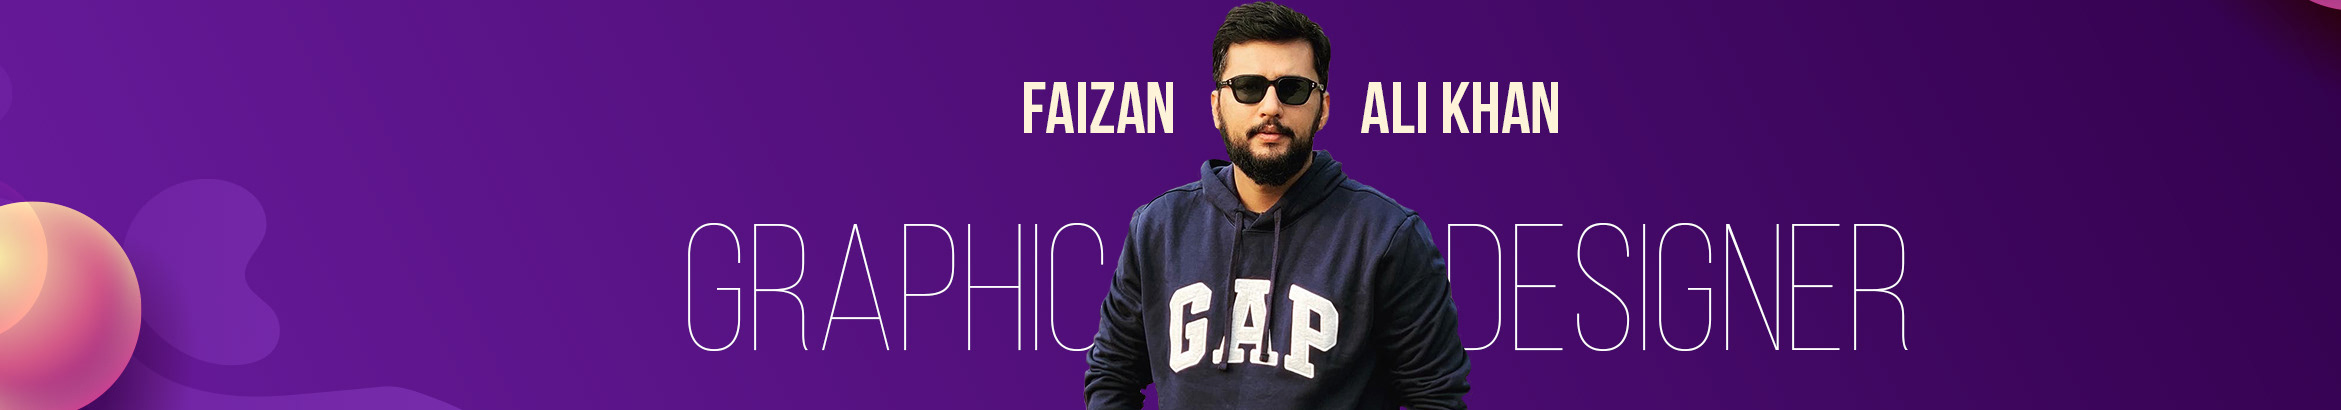 faizan Ali Khan's profile banner